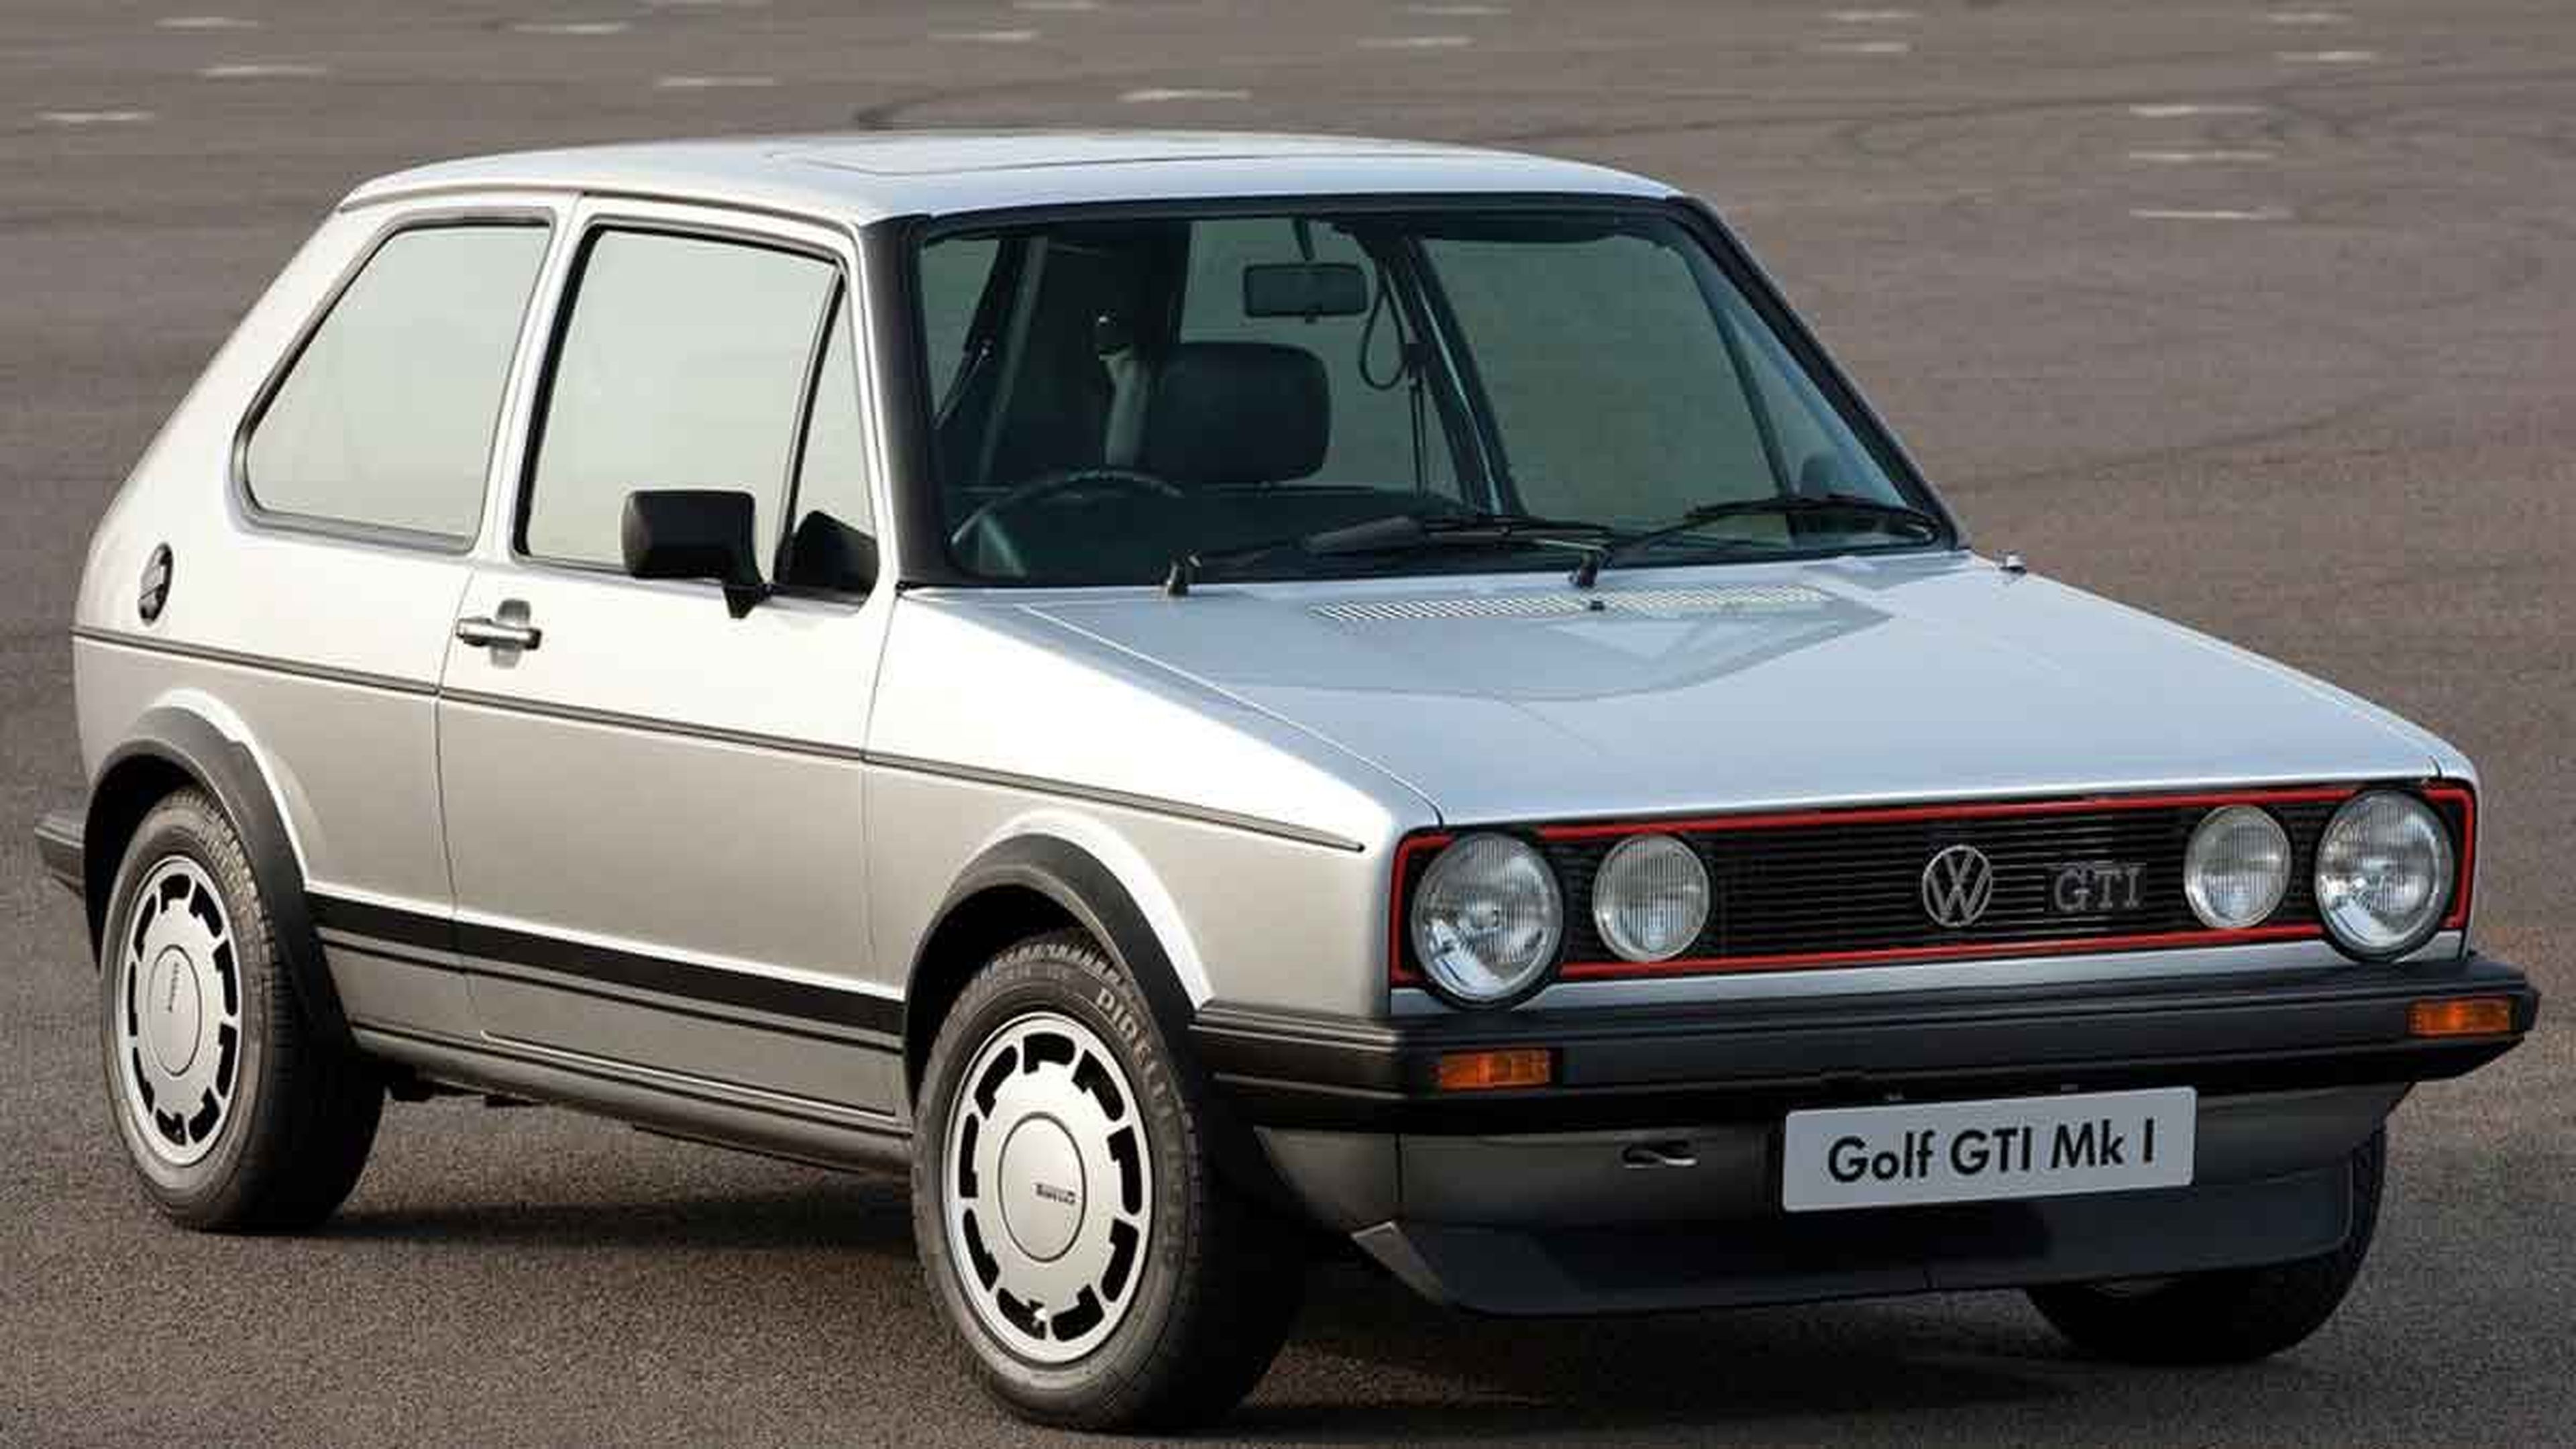 Si tienes un VW Golf GTI MK I, esto te interesa (y mucho)